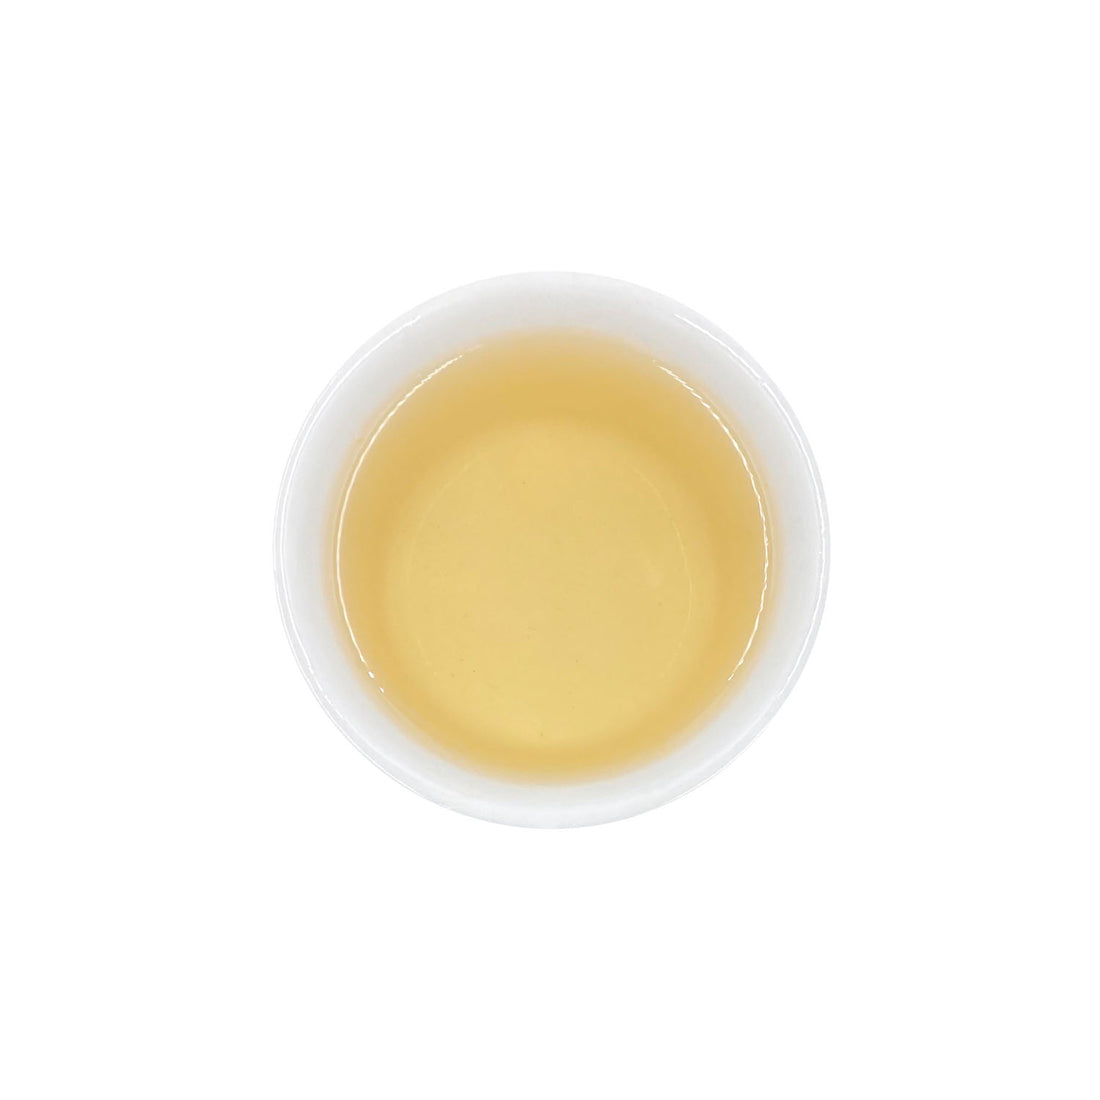 Ein ansprechendes Foto von unserem aufgebrühten Weißen Tee Silverneedle in einer Tasse.